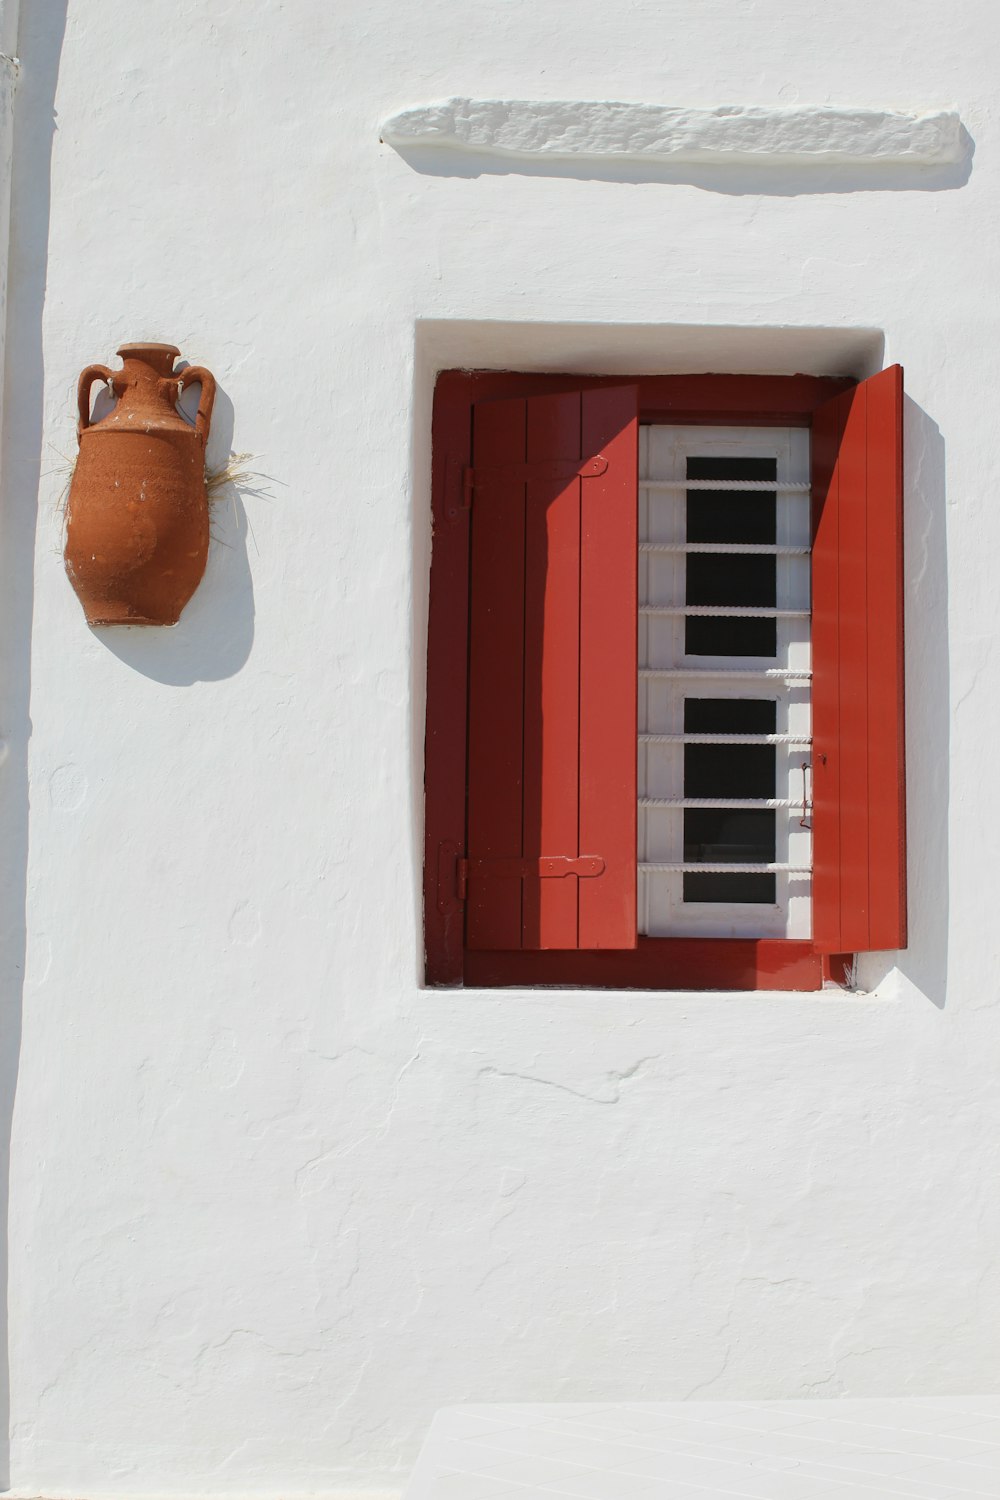 telaio della finestra in legno marrone con cappello da sole marrone